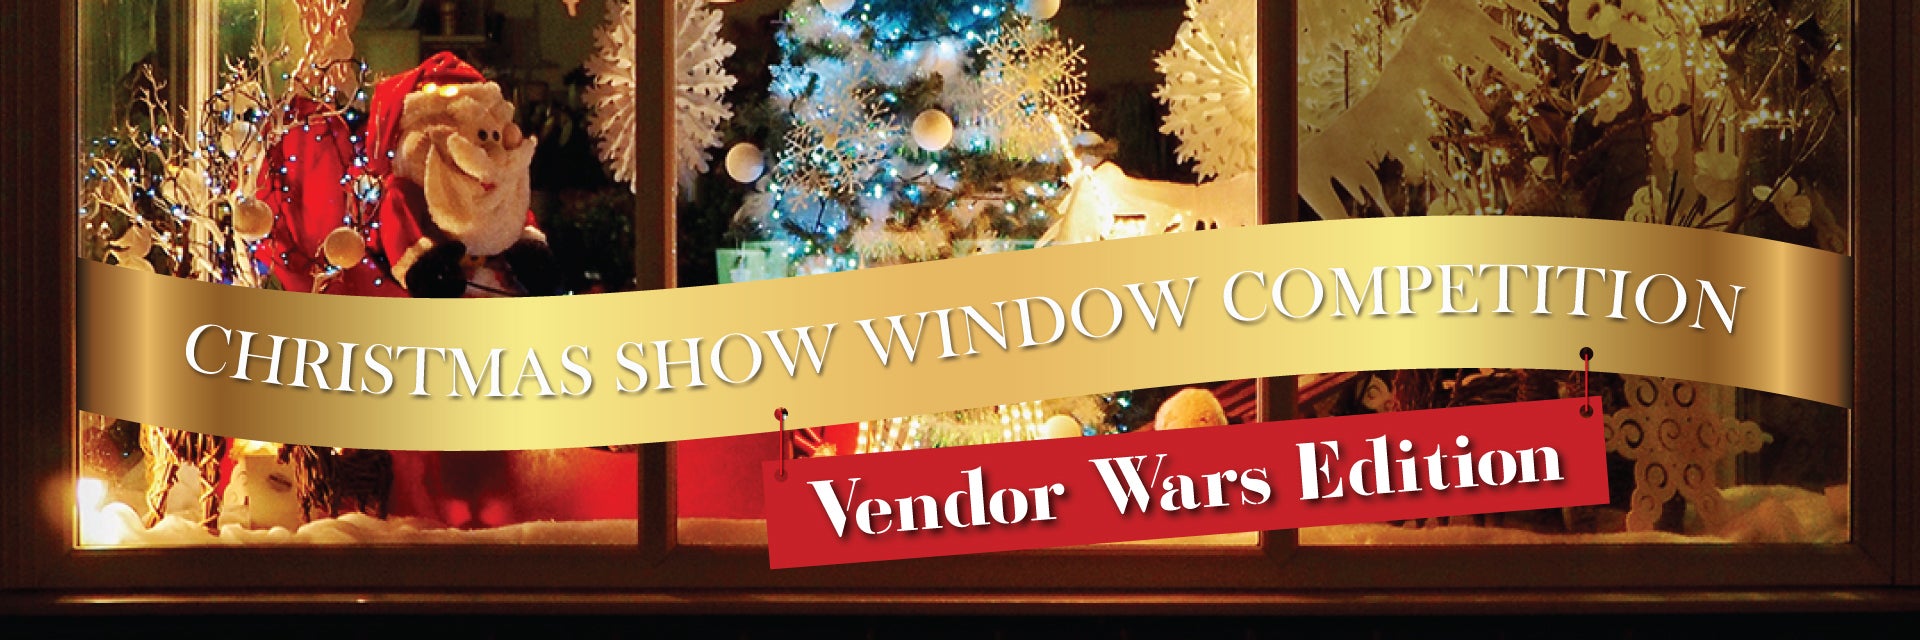 Christmas Show Windows Vendor Wars